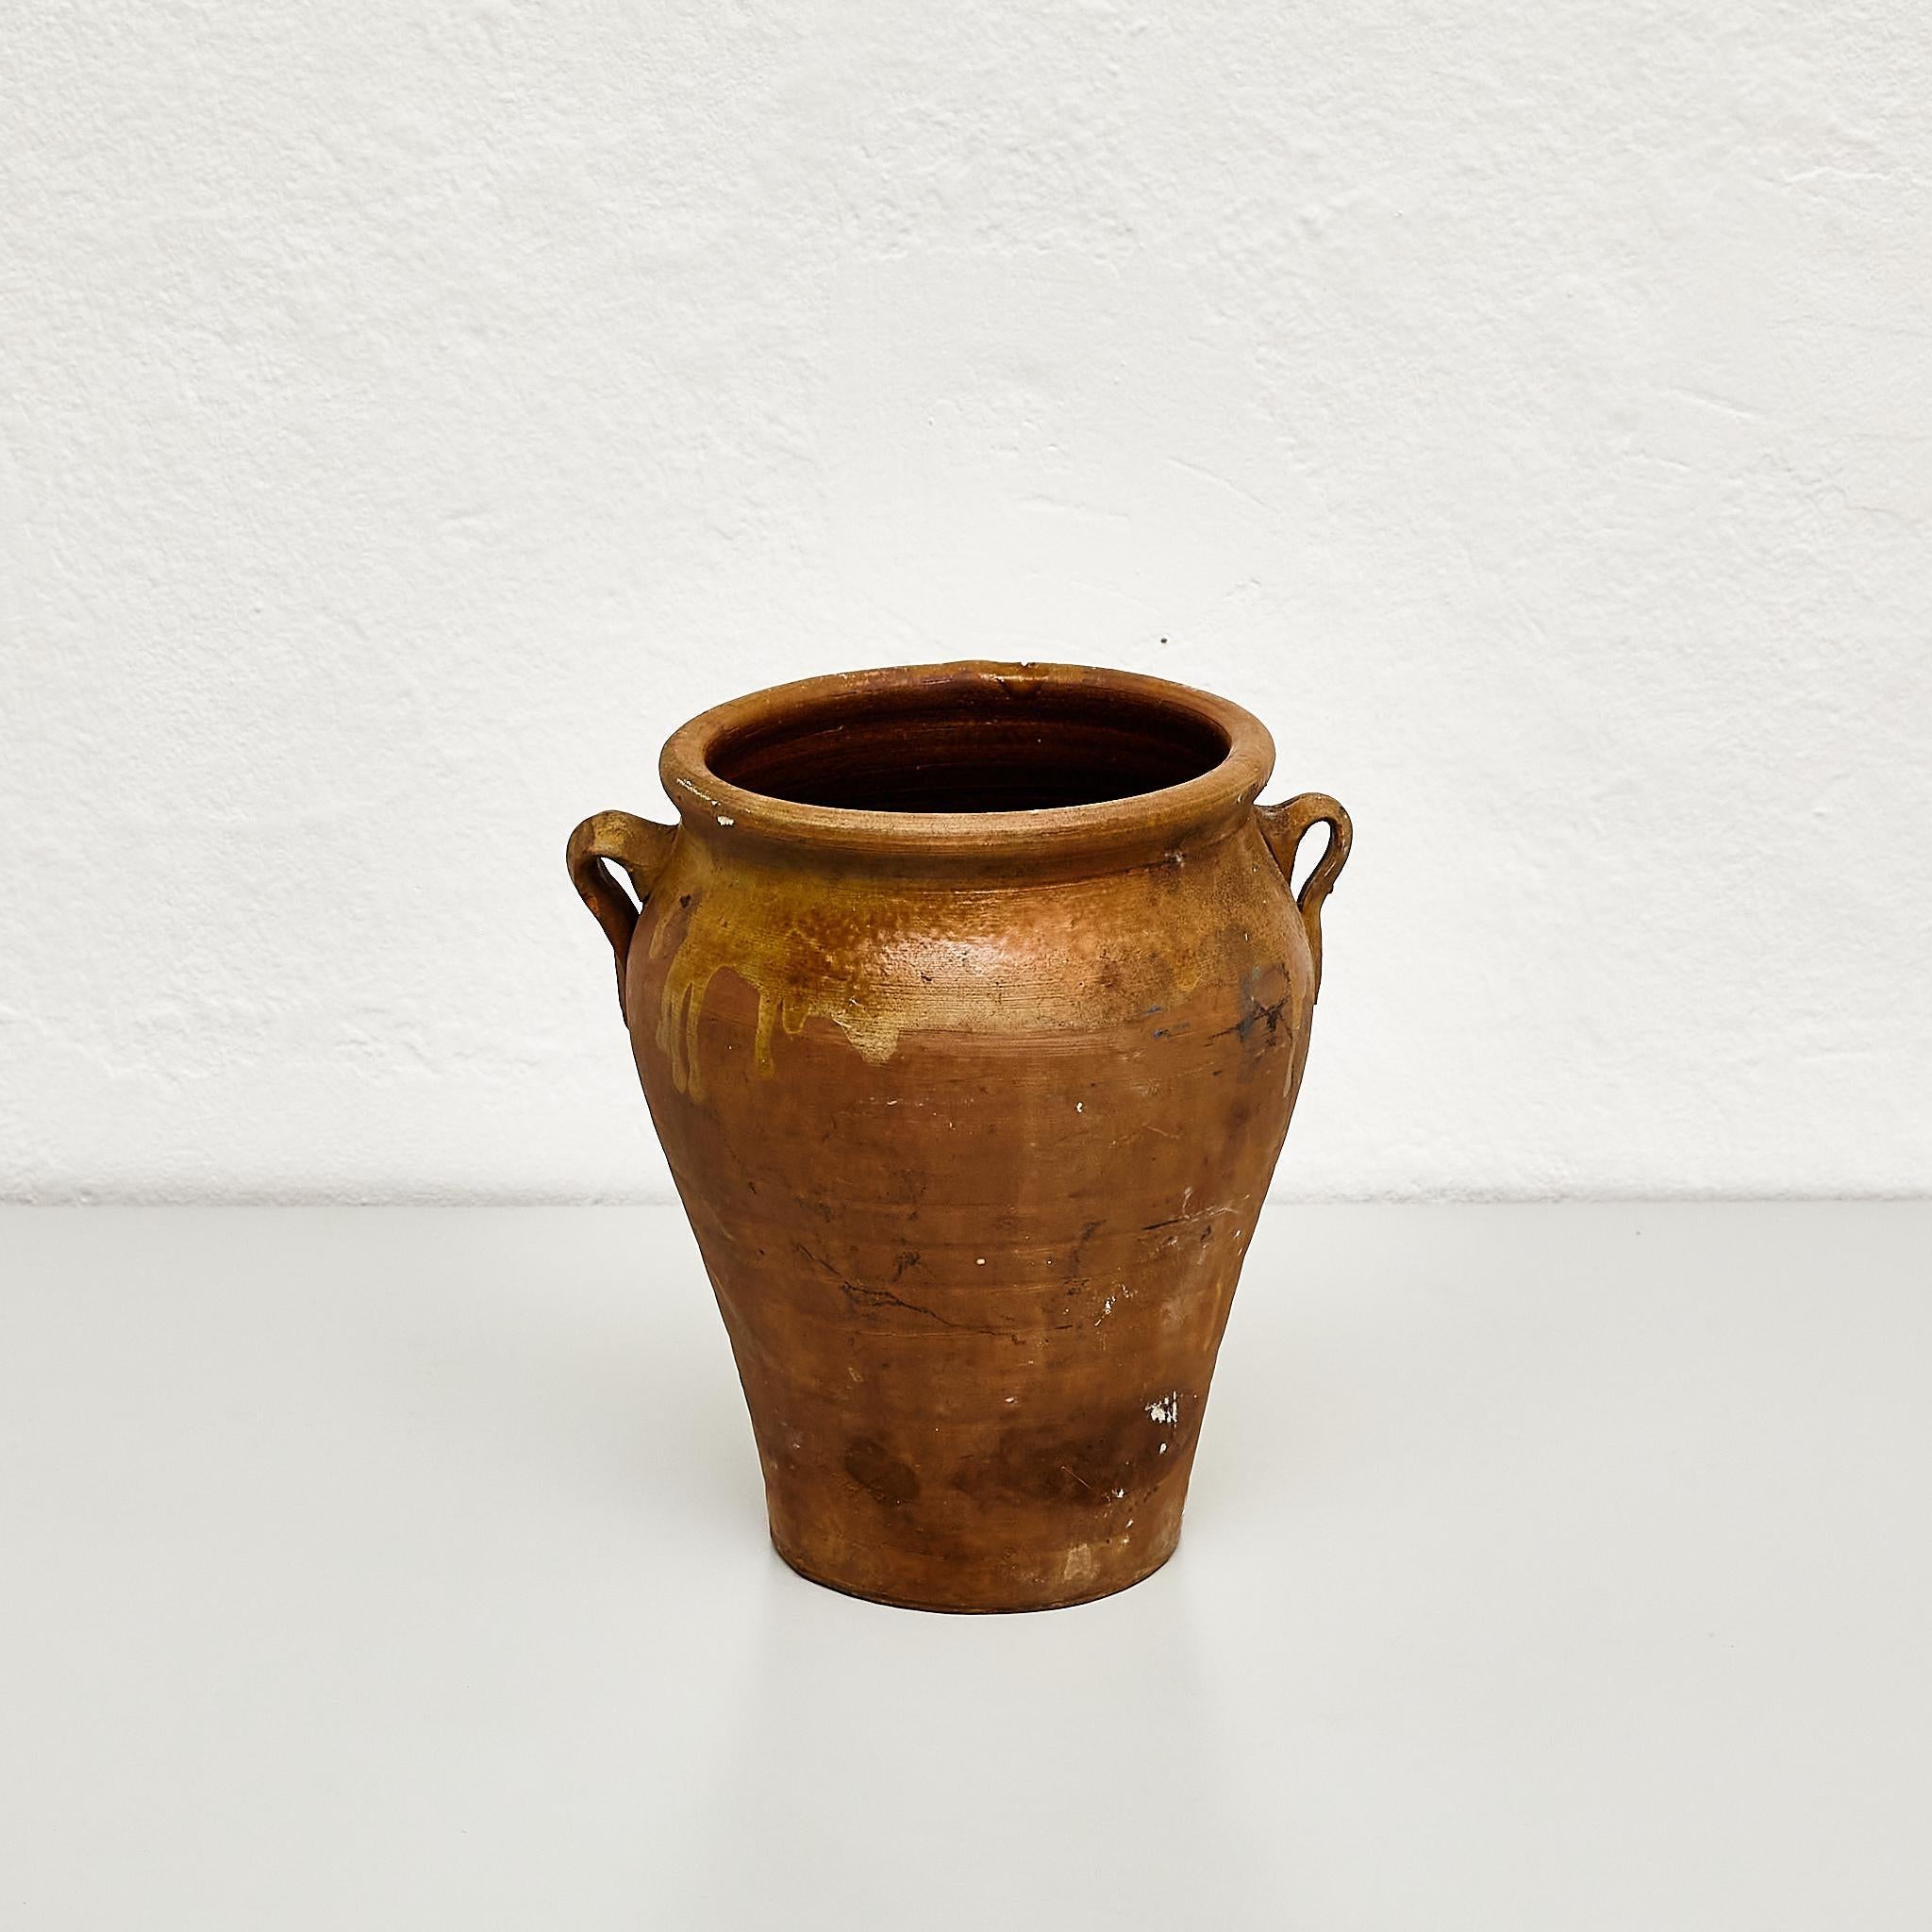 Vase en céramique espagnole traditionnelle du début du 20e siècle, vers 1940

Fabriqué en Espagne, début du 20e siècle.

En état d'origine avec une usure mineure conforme à l'âge et à l'utilisation, préservant une belle patine.

Matériaux :